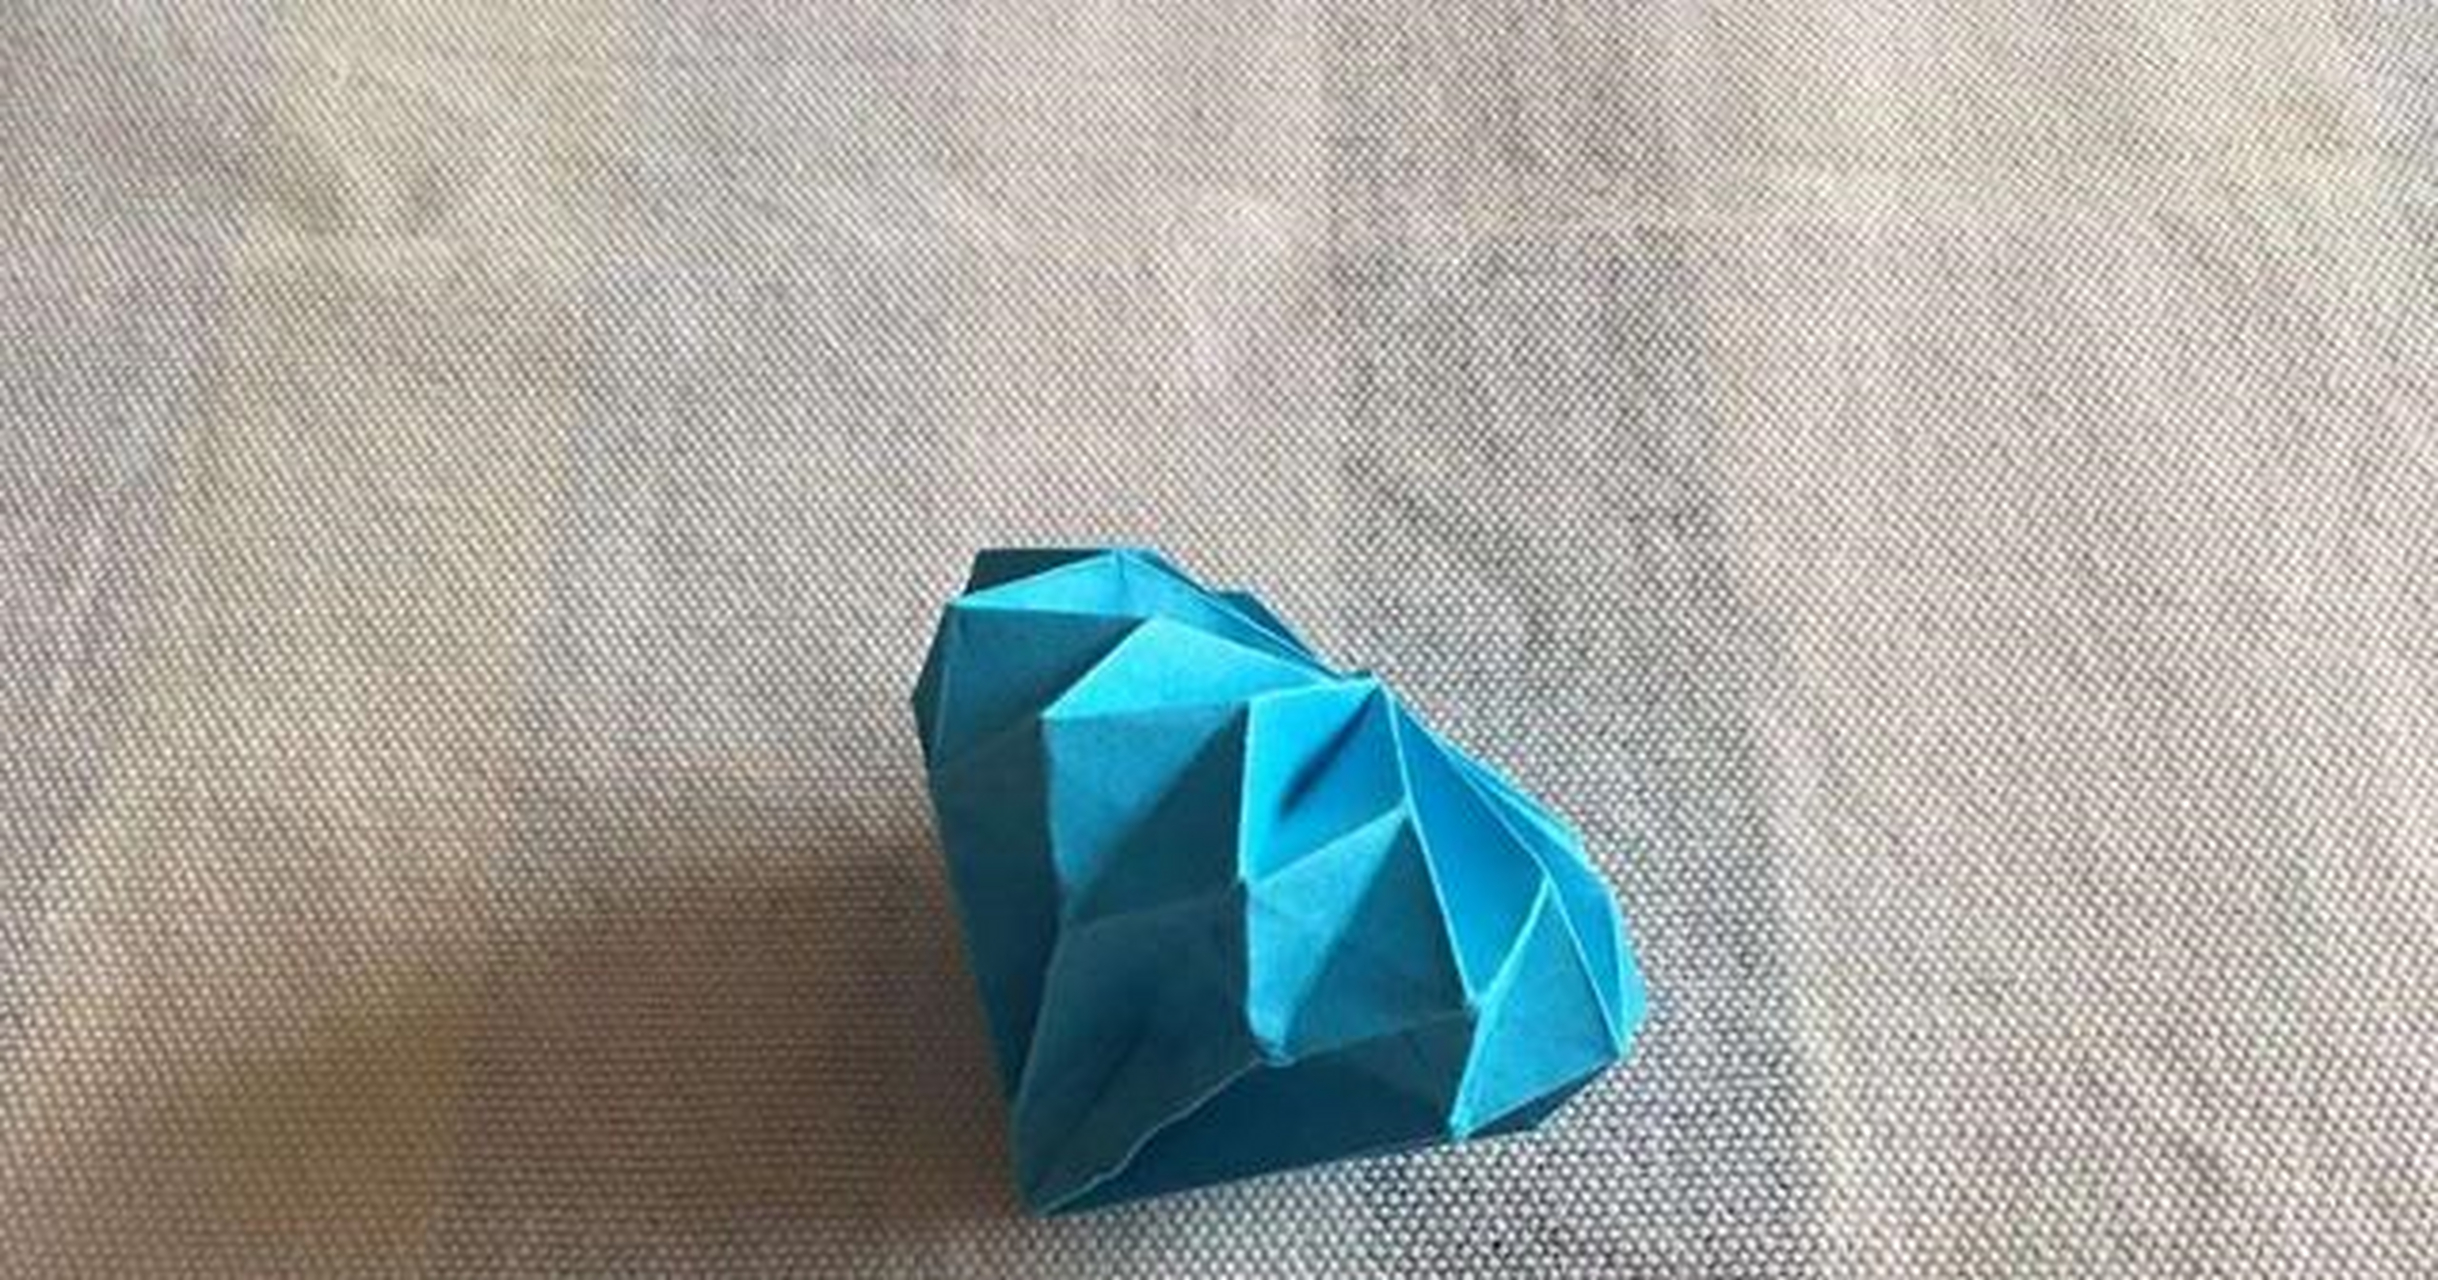 折纸:折一个璀璨夺目的耀眼钻石,只需要一张纸就完成哦[汗]